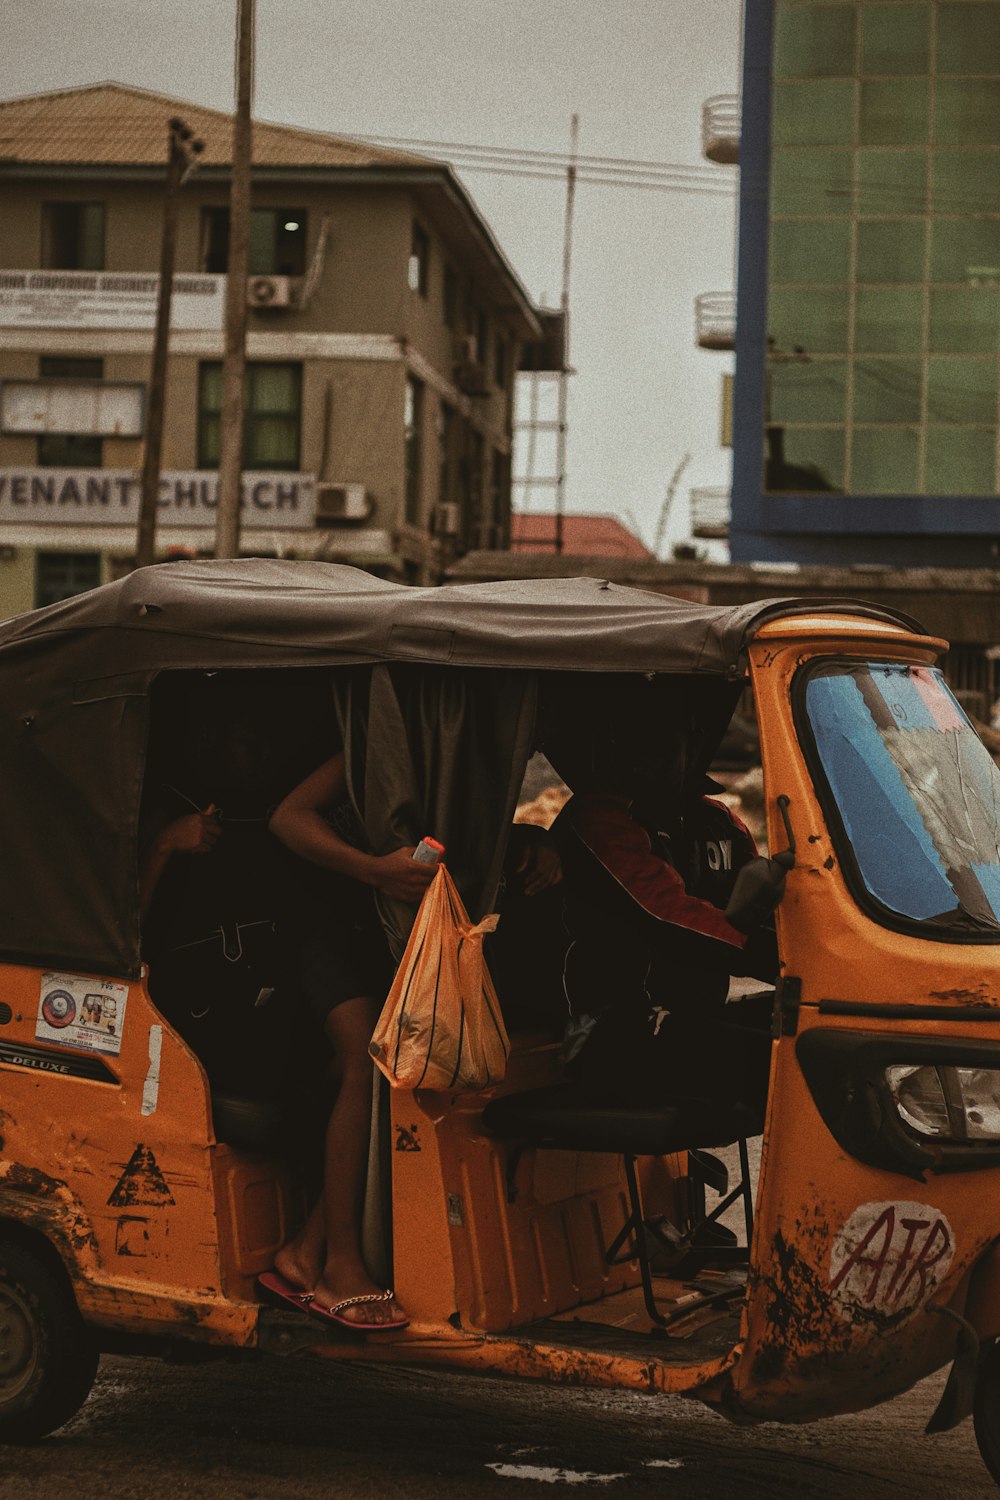 orangefarbenes Auto mit schwarzem Regenschirm oben drauf